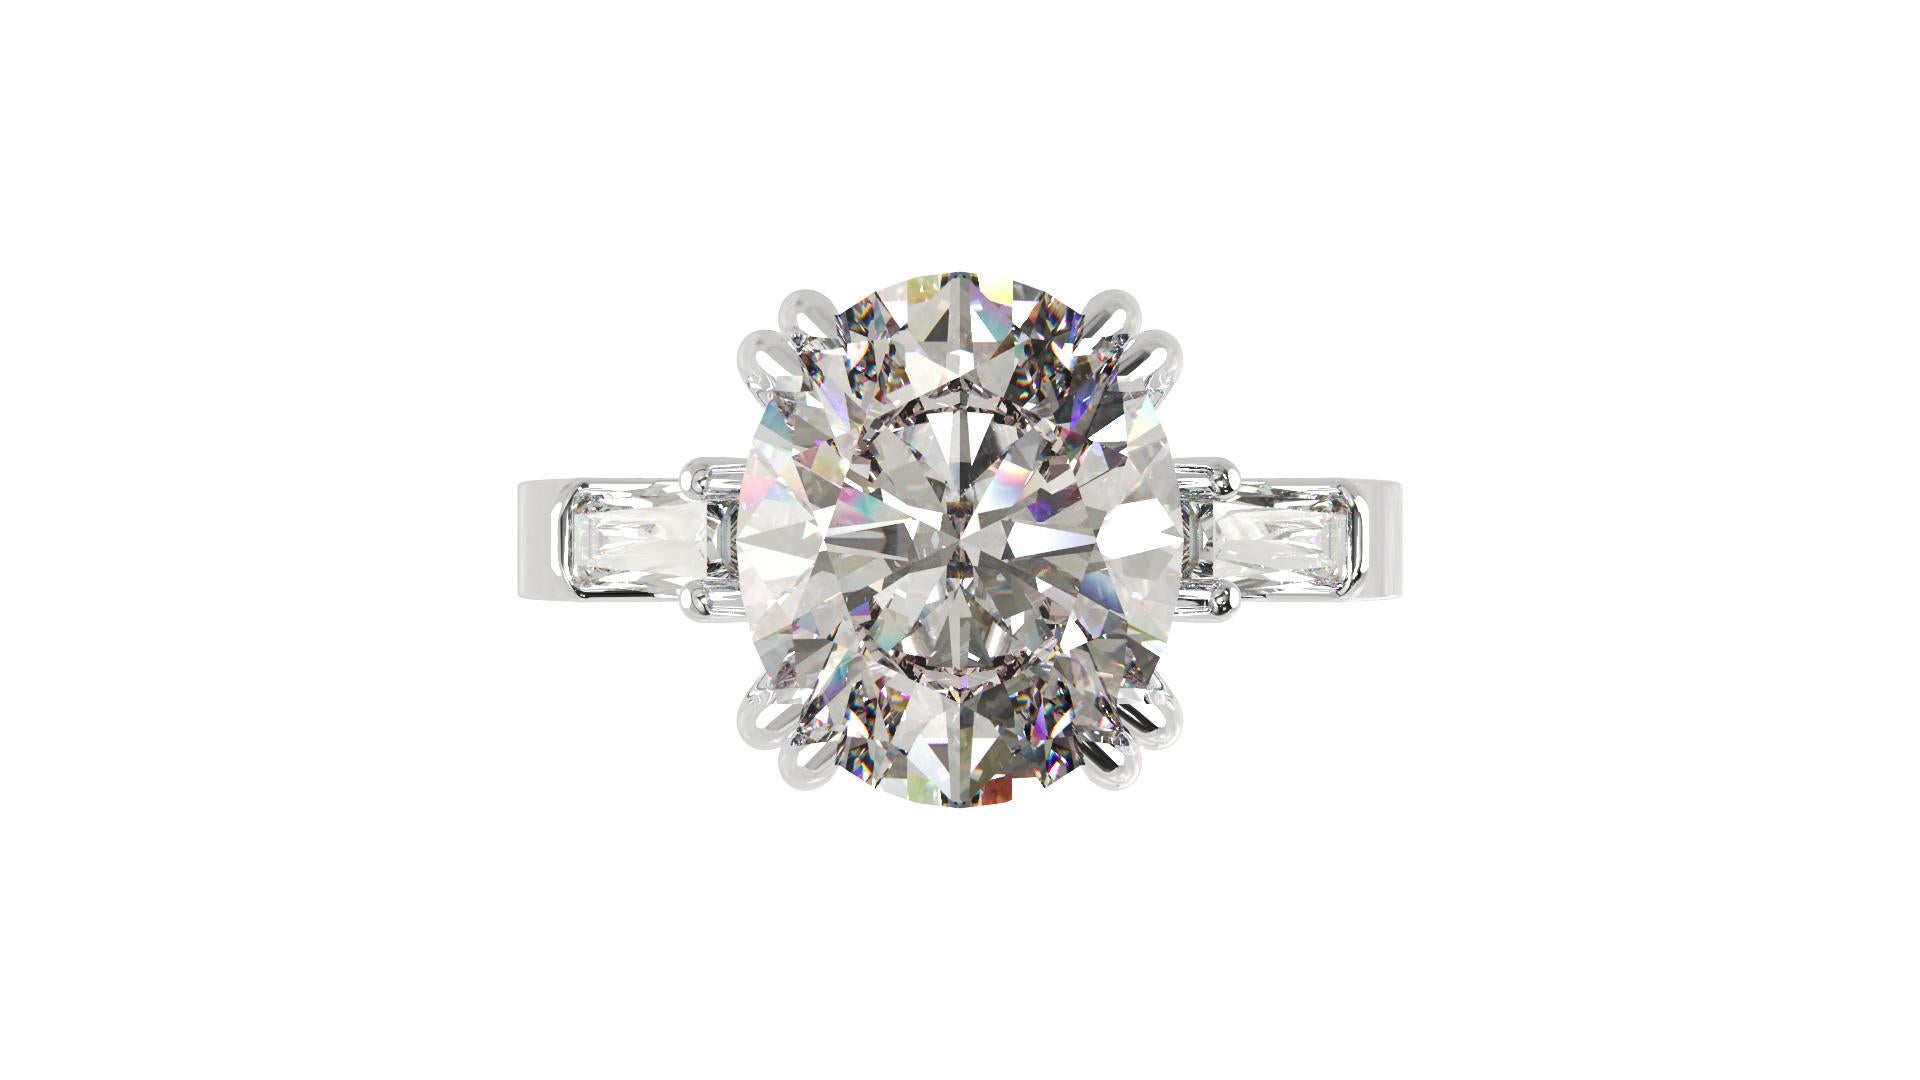 3 carat oval diamond ring